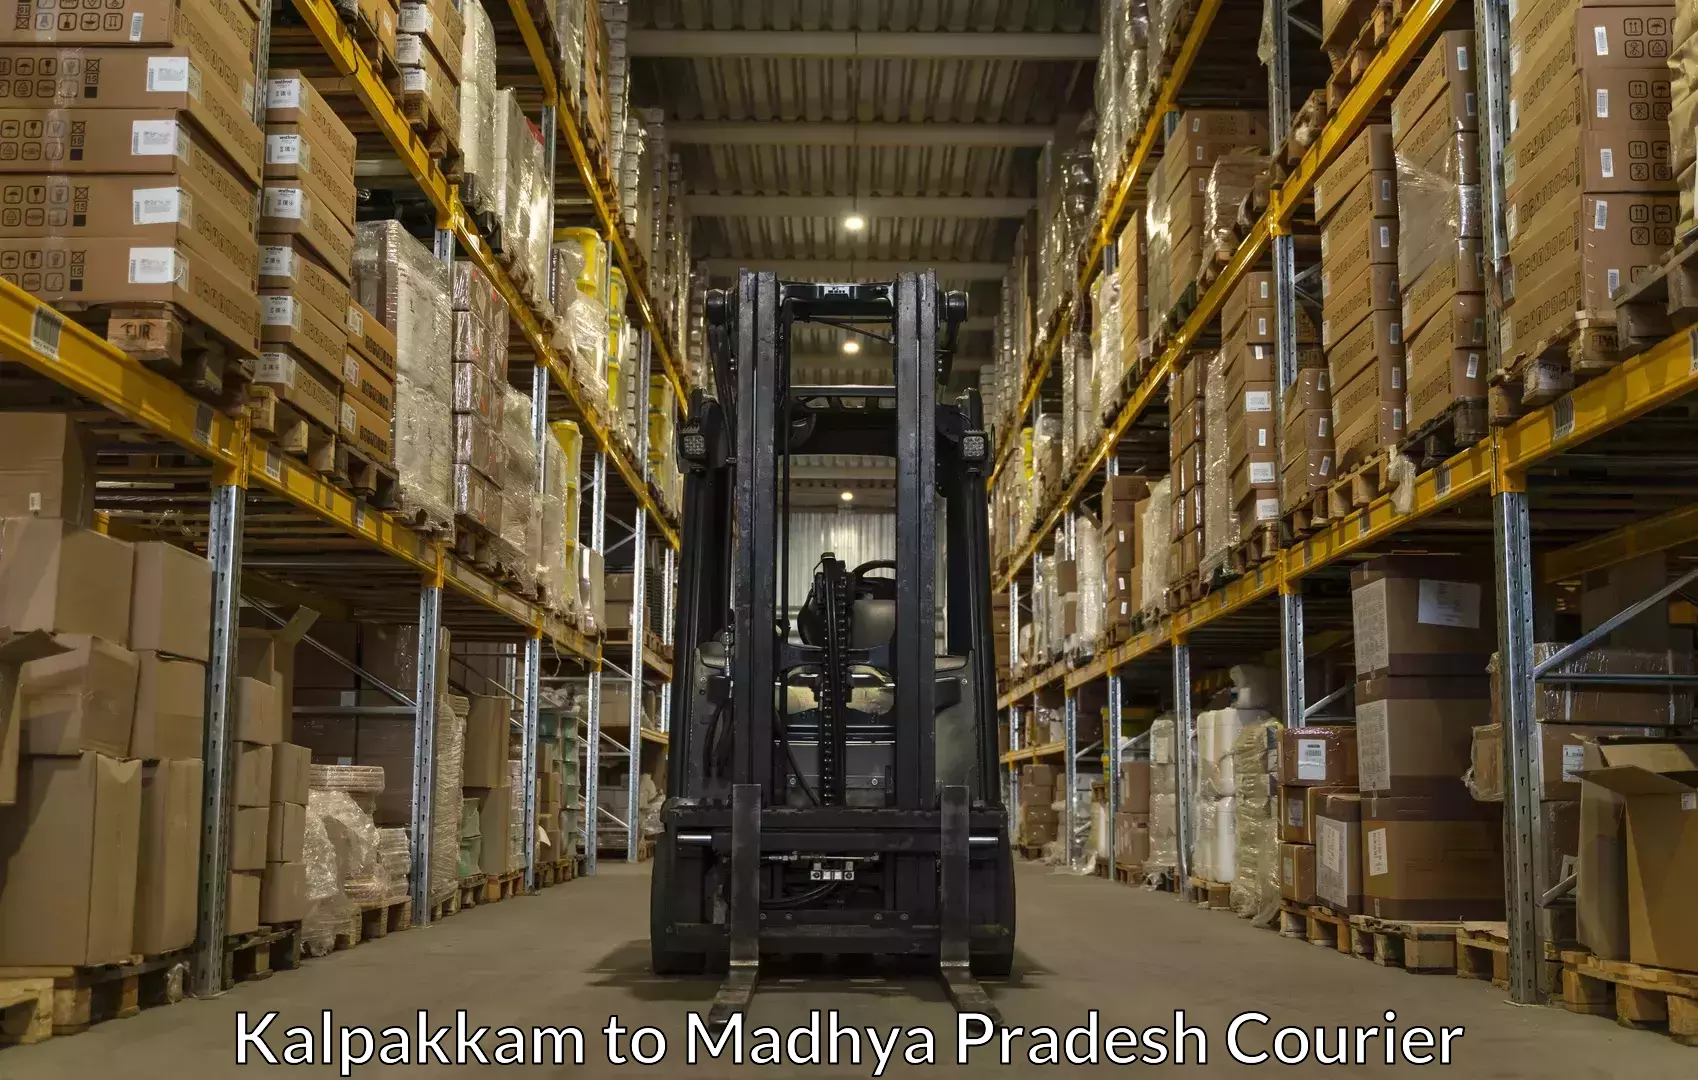 Premium luggage delivery in Kalpakkam to Niwari